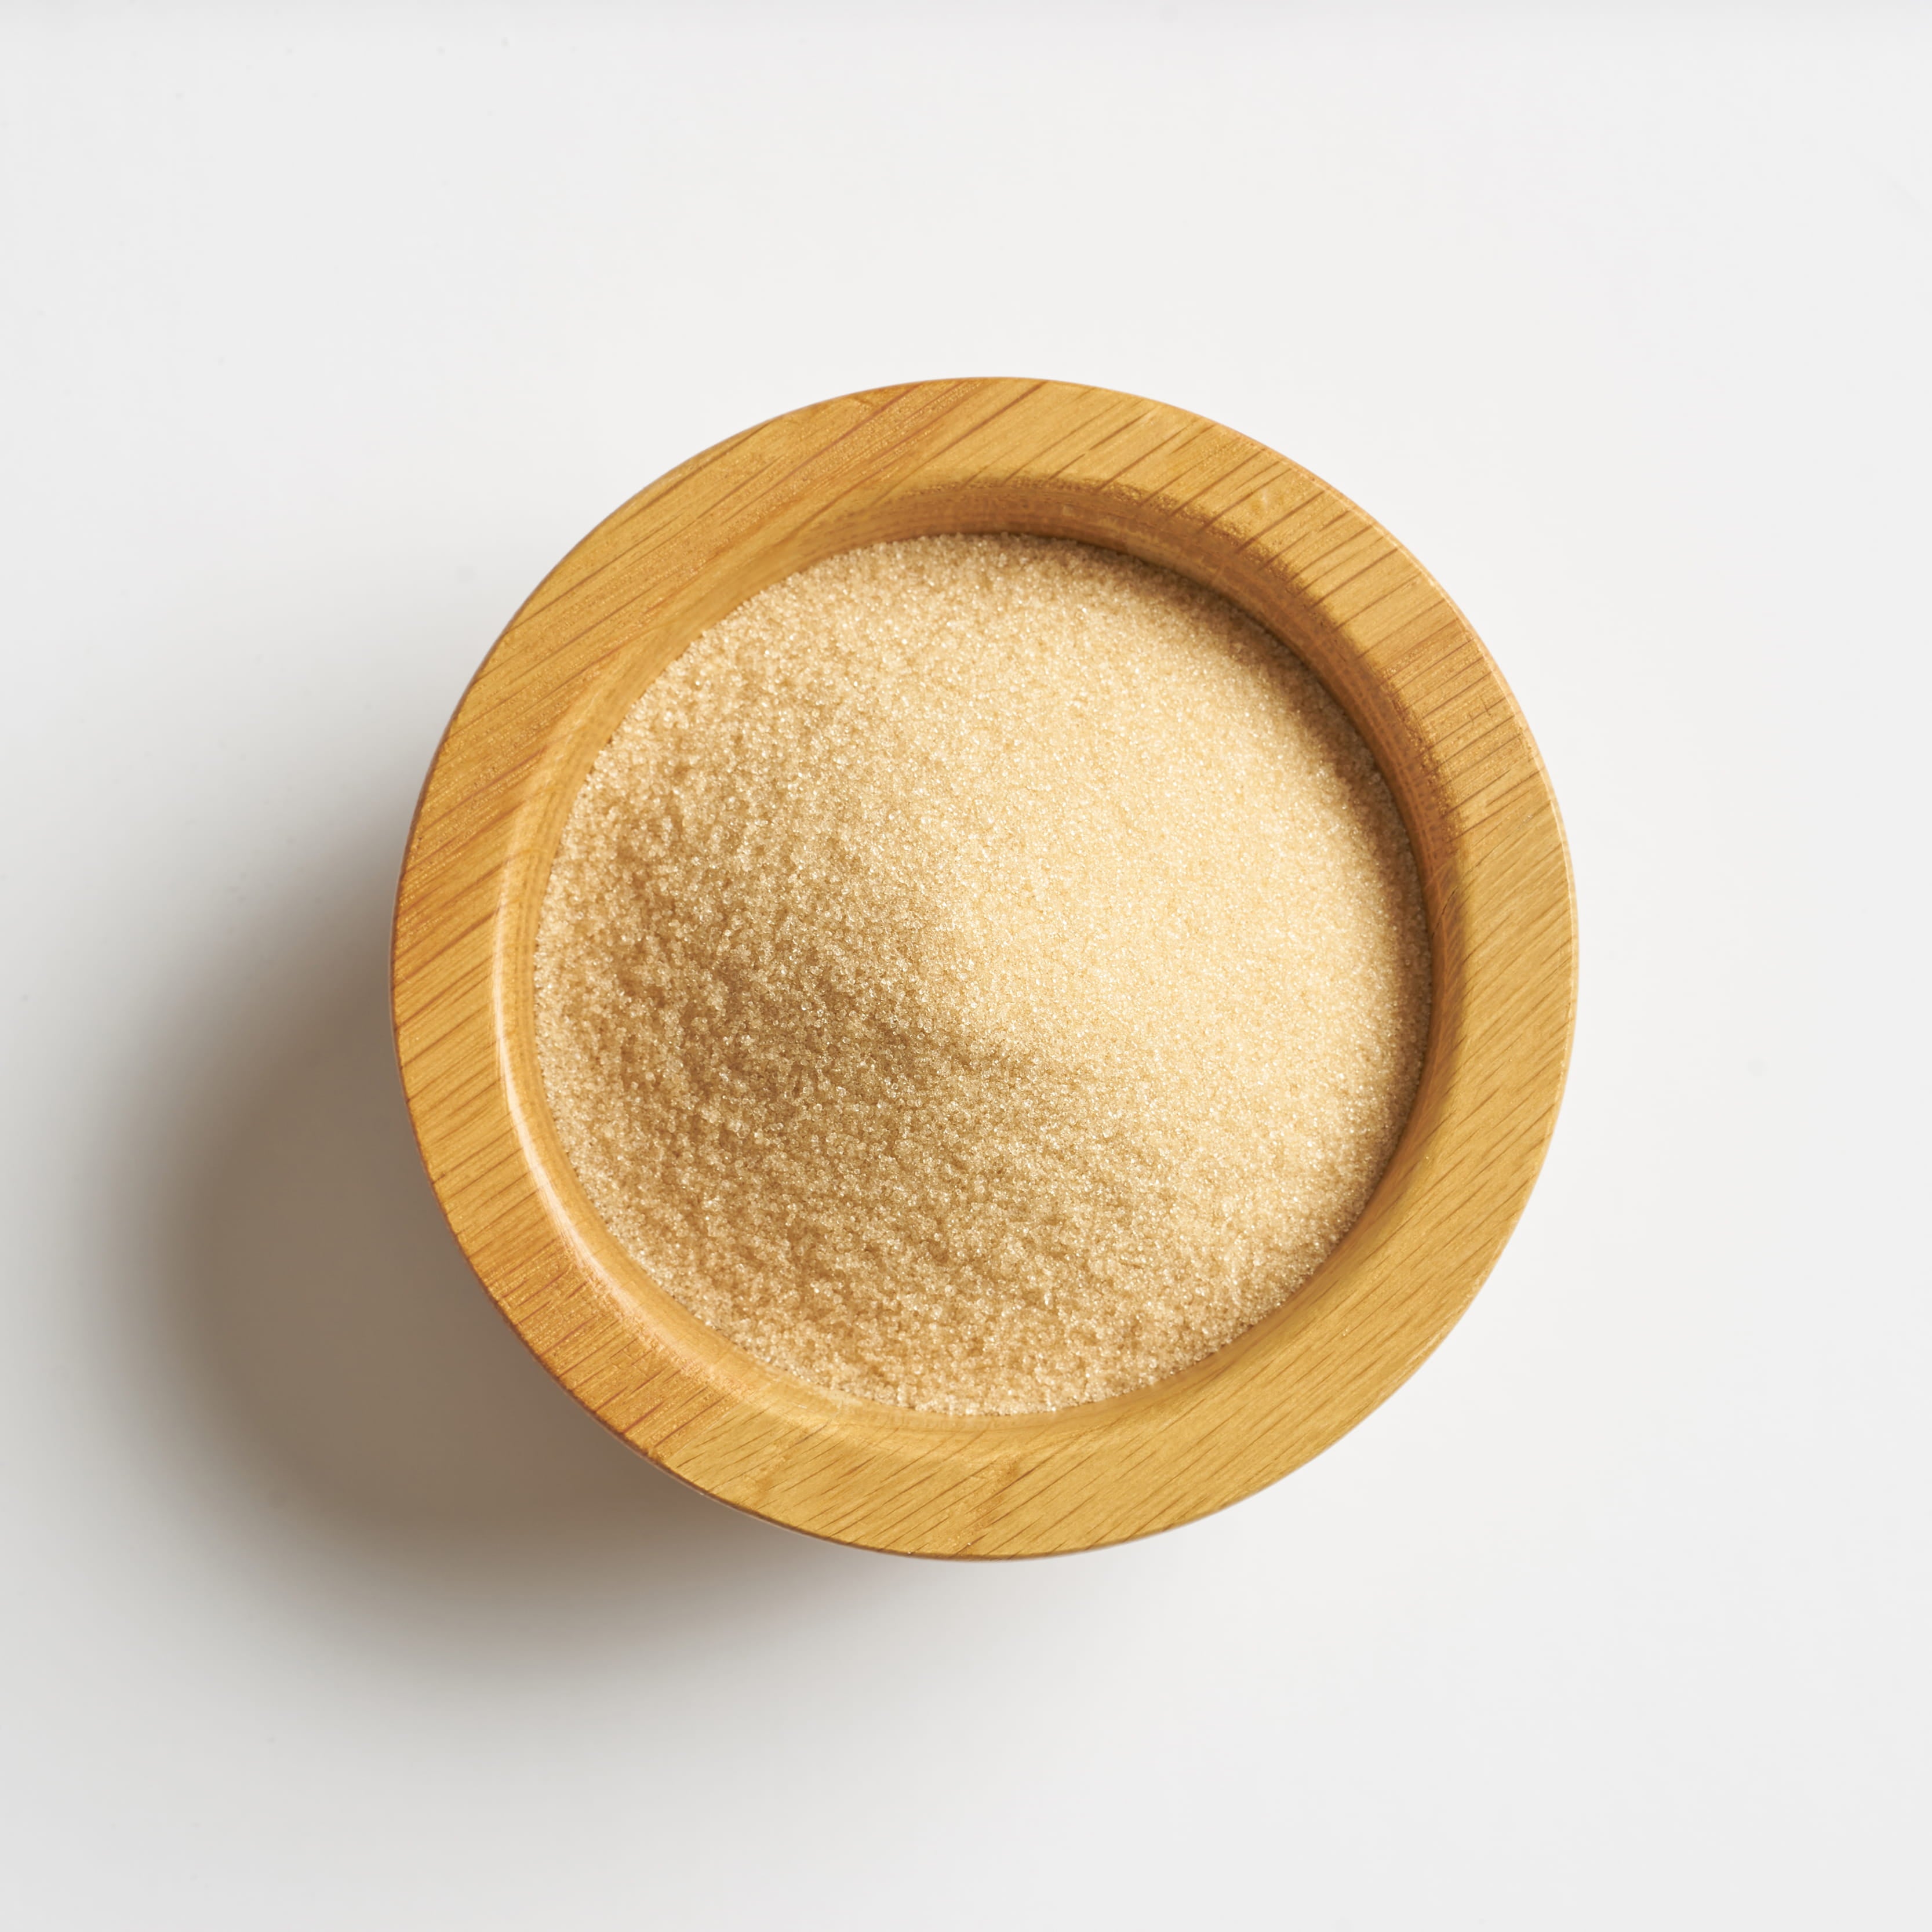 Lo llamamos golden por qué su color y sabor es similar al azúcar morena. 1:1 es sustituto perfecto del dulzor del azúcar, una cucharada equivale a una cuchara de azúcar de caña normal.